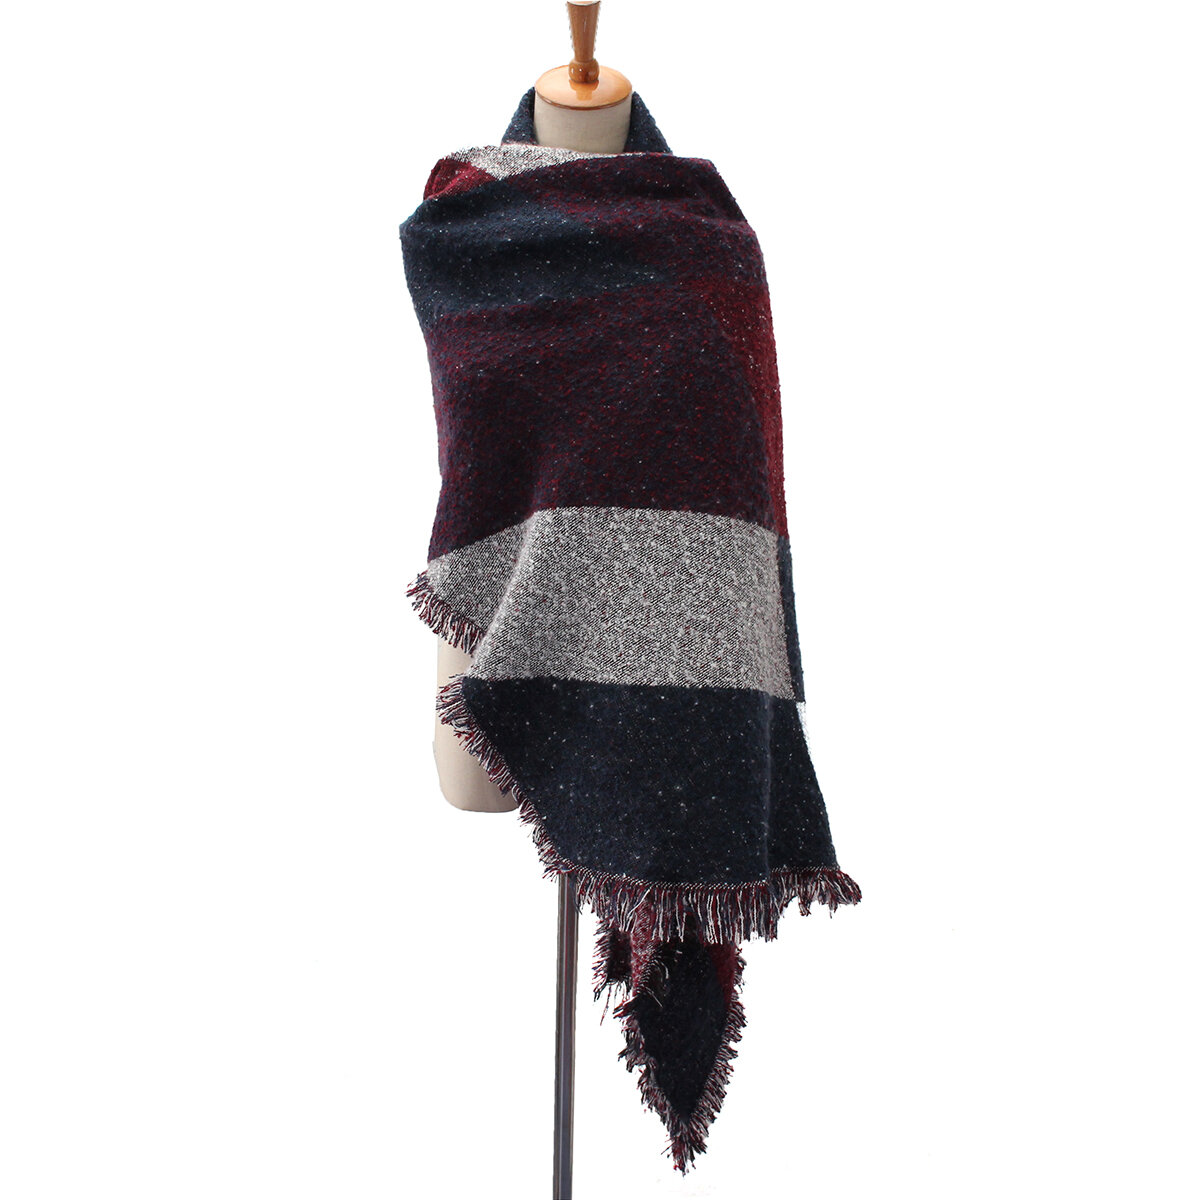 Fashion Blanket Scarf Weiblicher Schal aus Kaschmir und Wollschal New Winter Warm Scarves Cape